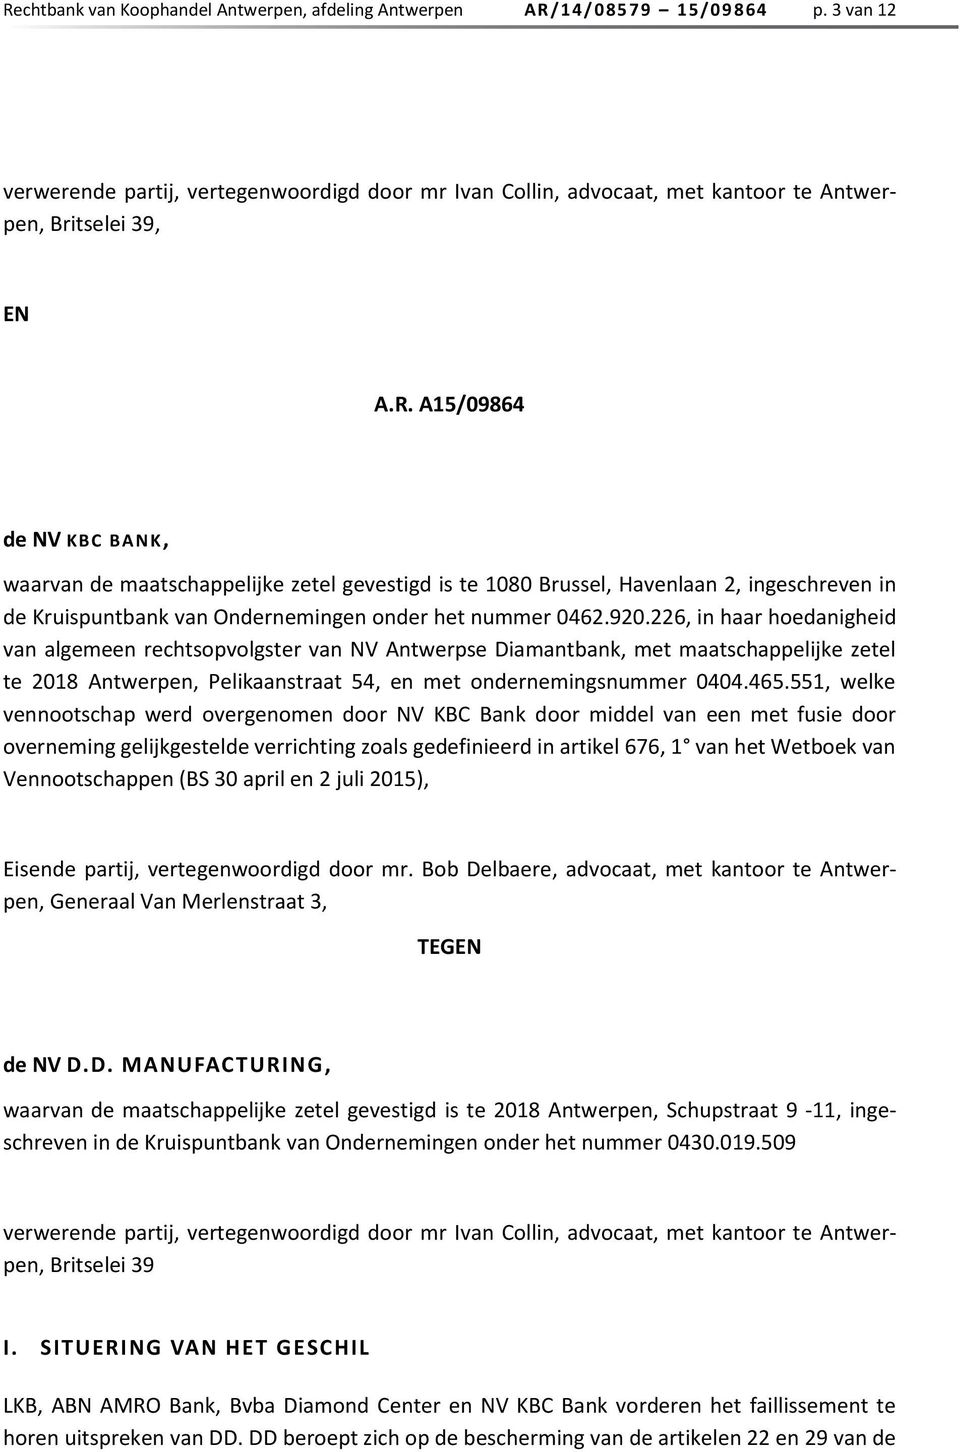 A15/09864 de NV KBC BANK, waarvan de maatschappelijke zetel gevestigd is te 1080 Brussel, Havenlaan 2, ingeschreven in de Kruispuntbank van Ondernemingen onder het nummer 0462.920.